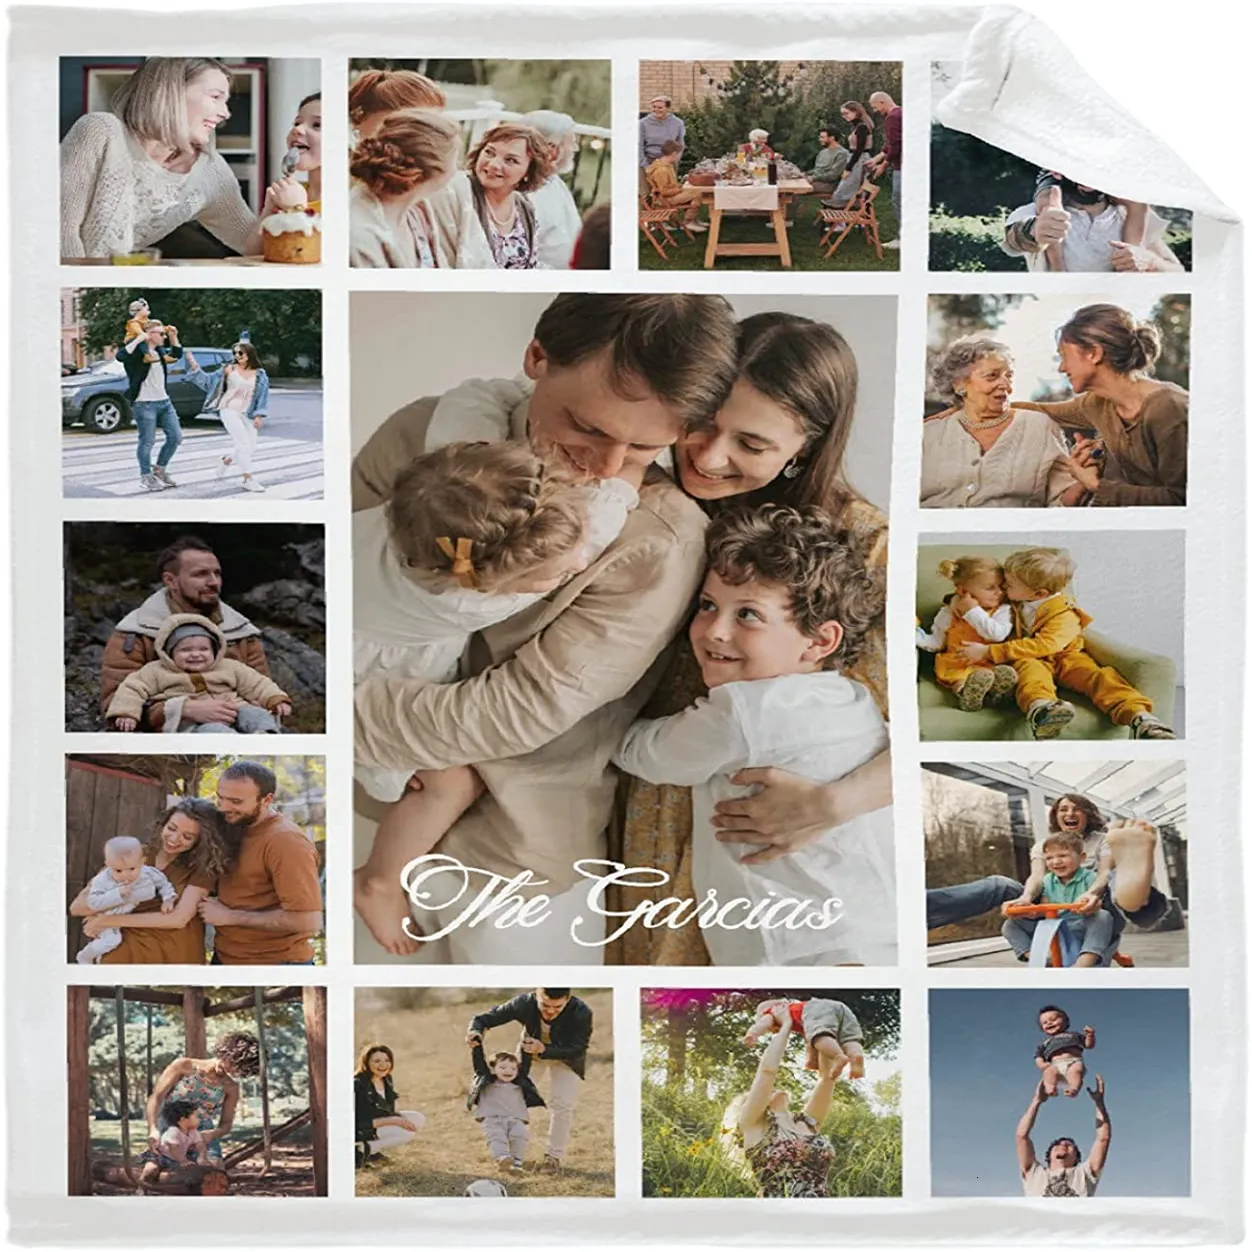 Одеяла Одеяло на заказ с 15 позициями Love Family Memories Одеяло с персонализированным изображением и текстом Подарок для семьи, пары, друзей 230920